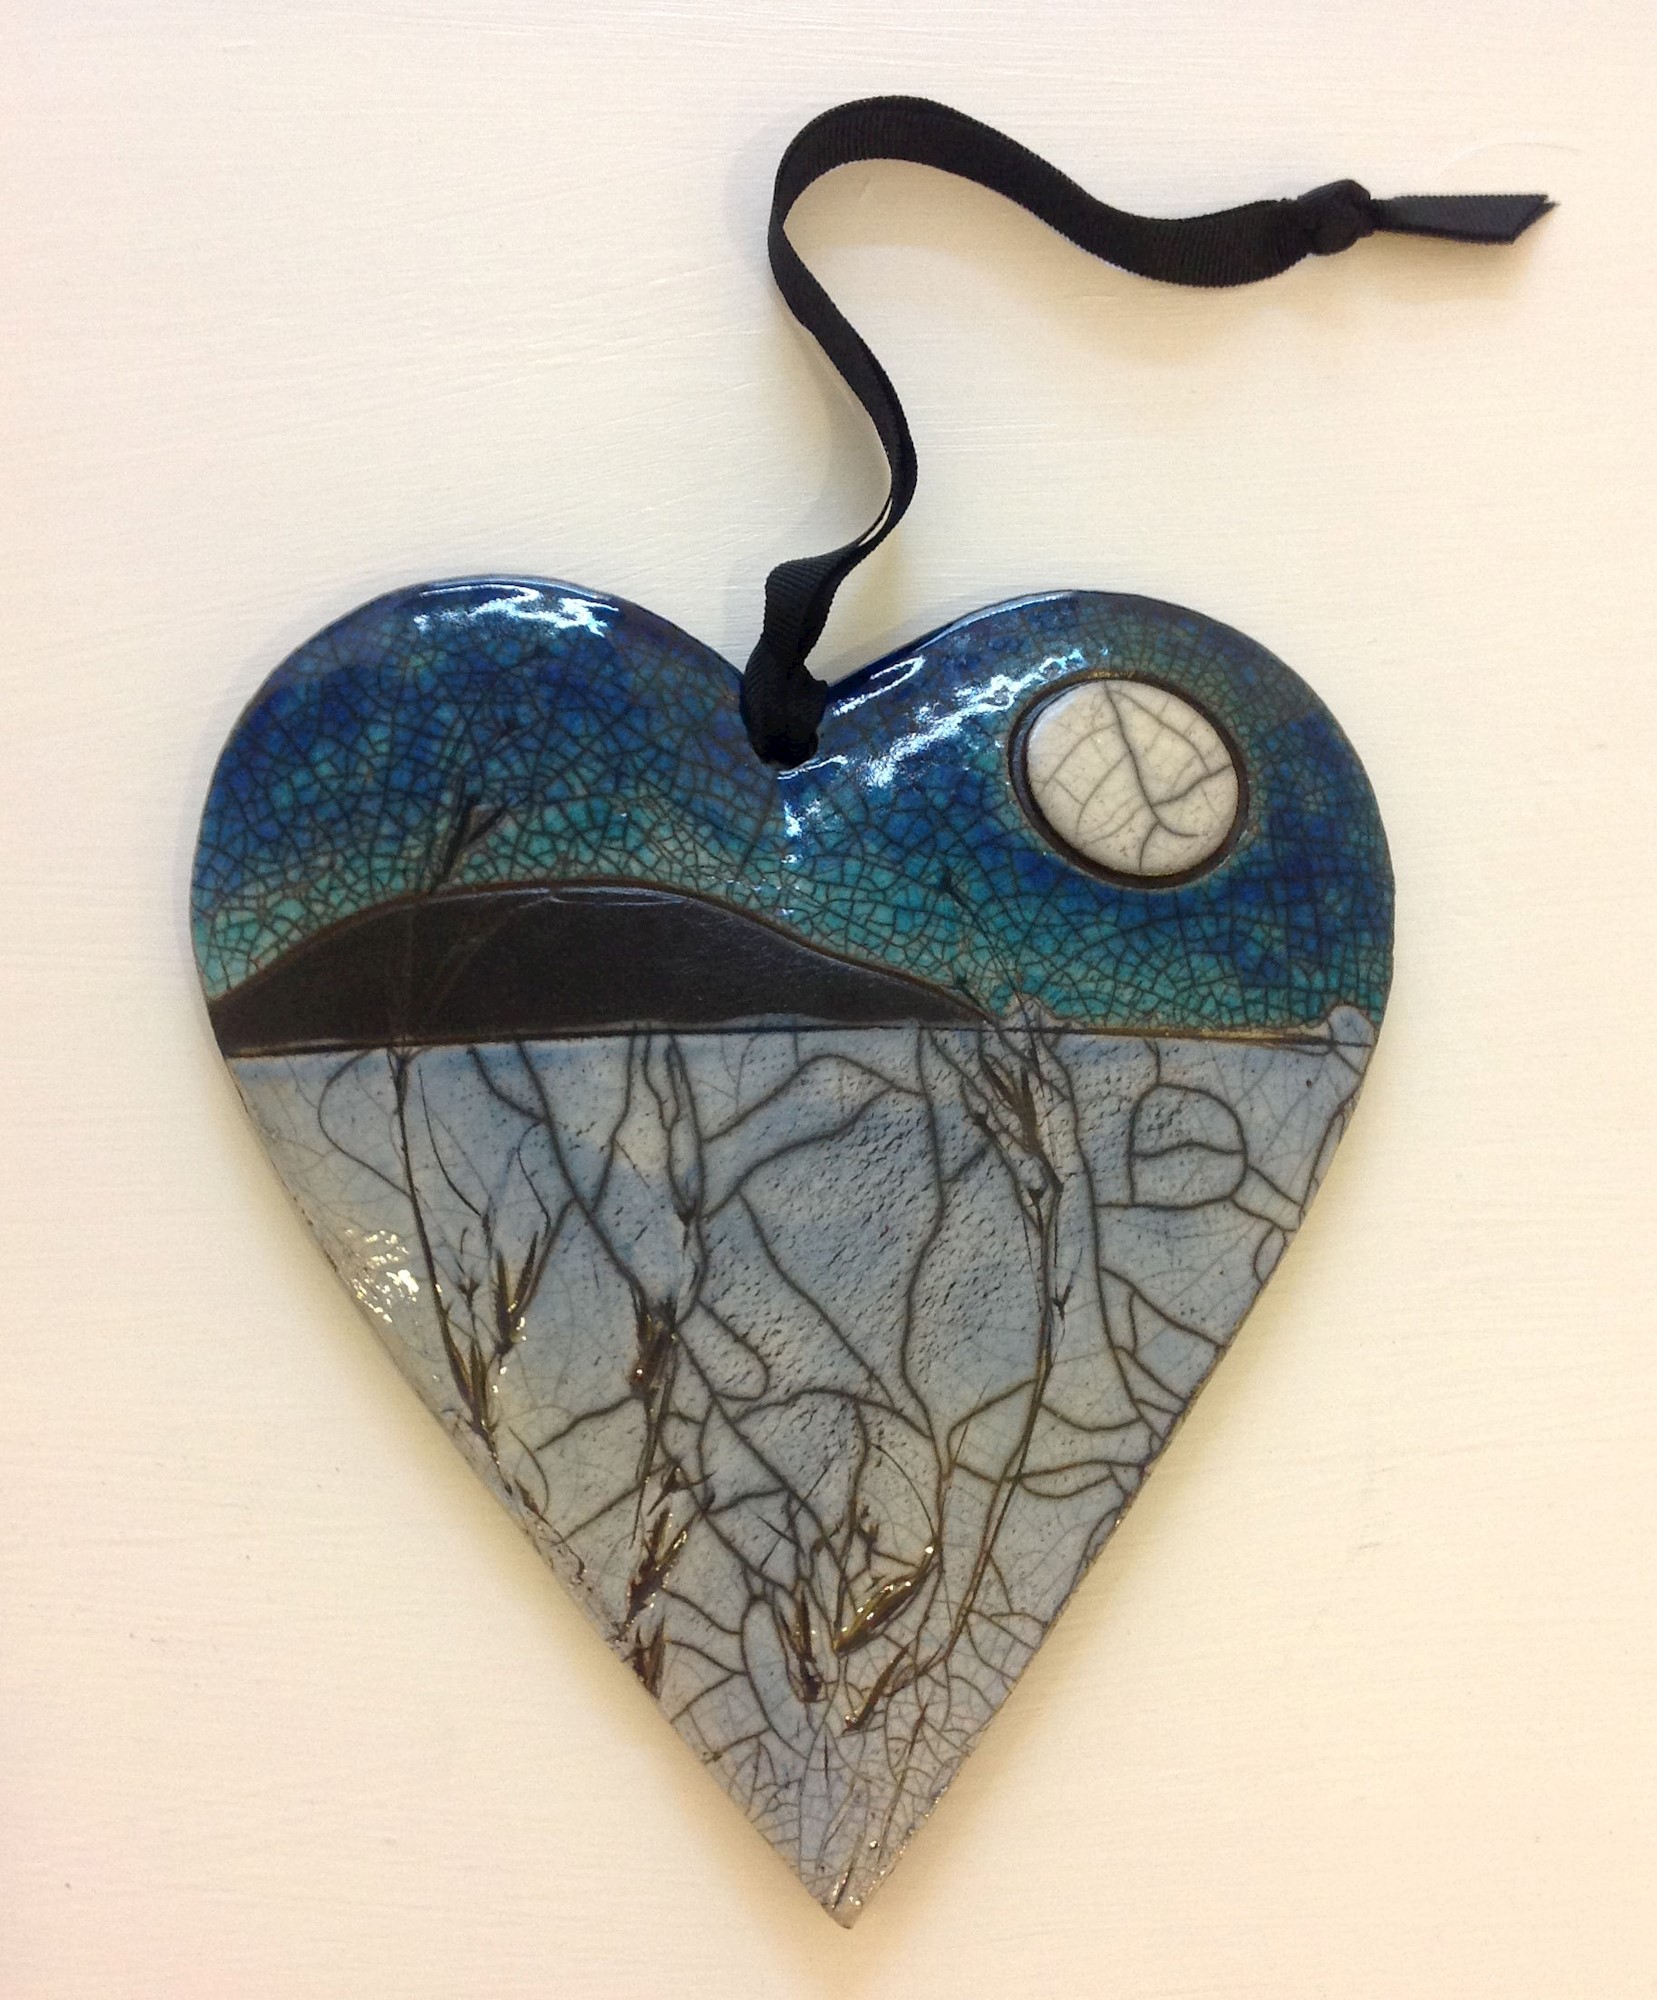 'Landscape Heart I' by artist Julian Smith